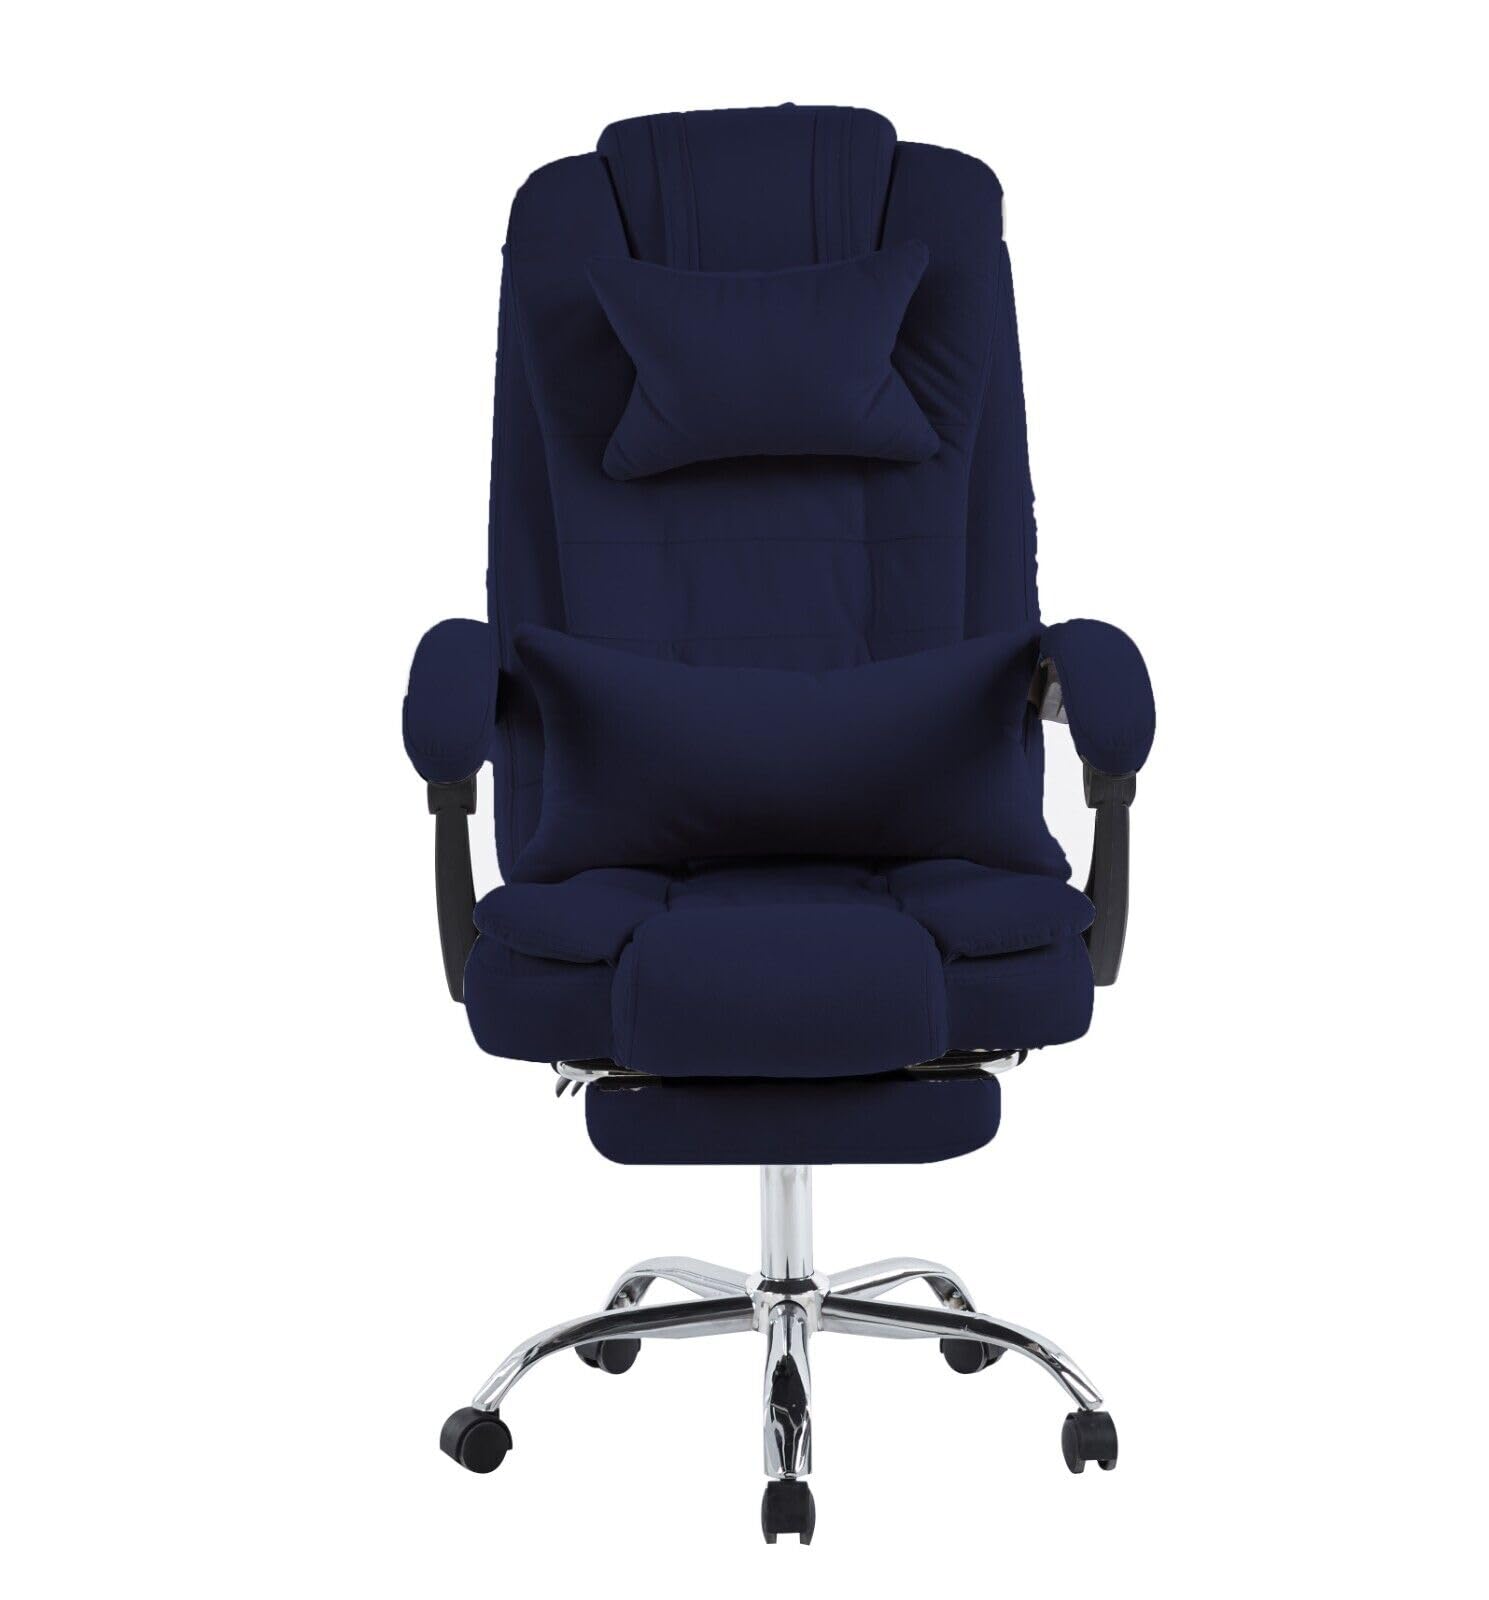 HYGRAD® Velvet Padded Office Chair Reclining Adjustable Swivel Home Office Work Chair Desk Chair Foot Rest Gaming Chair Velvet